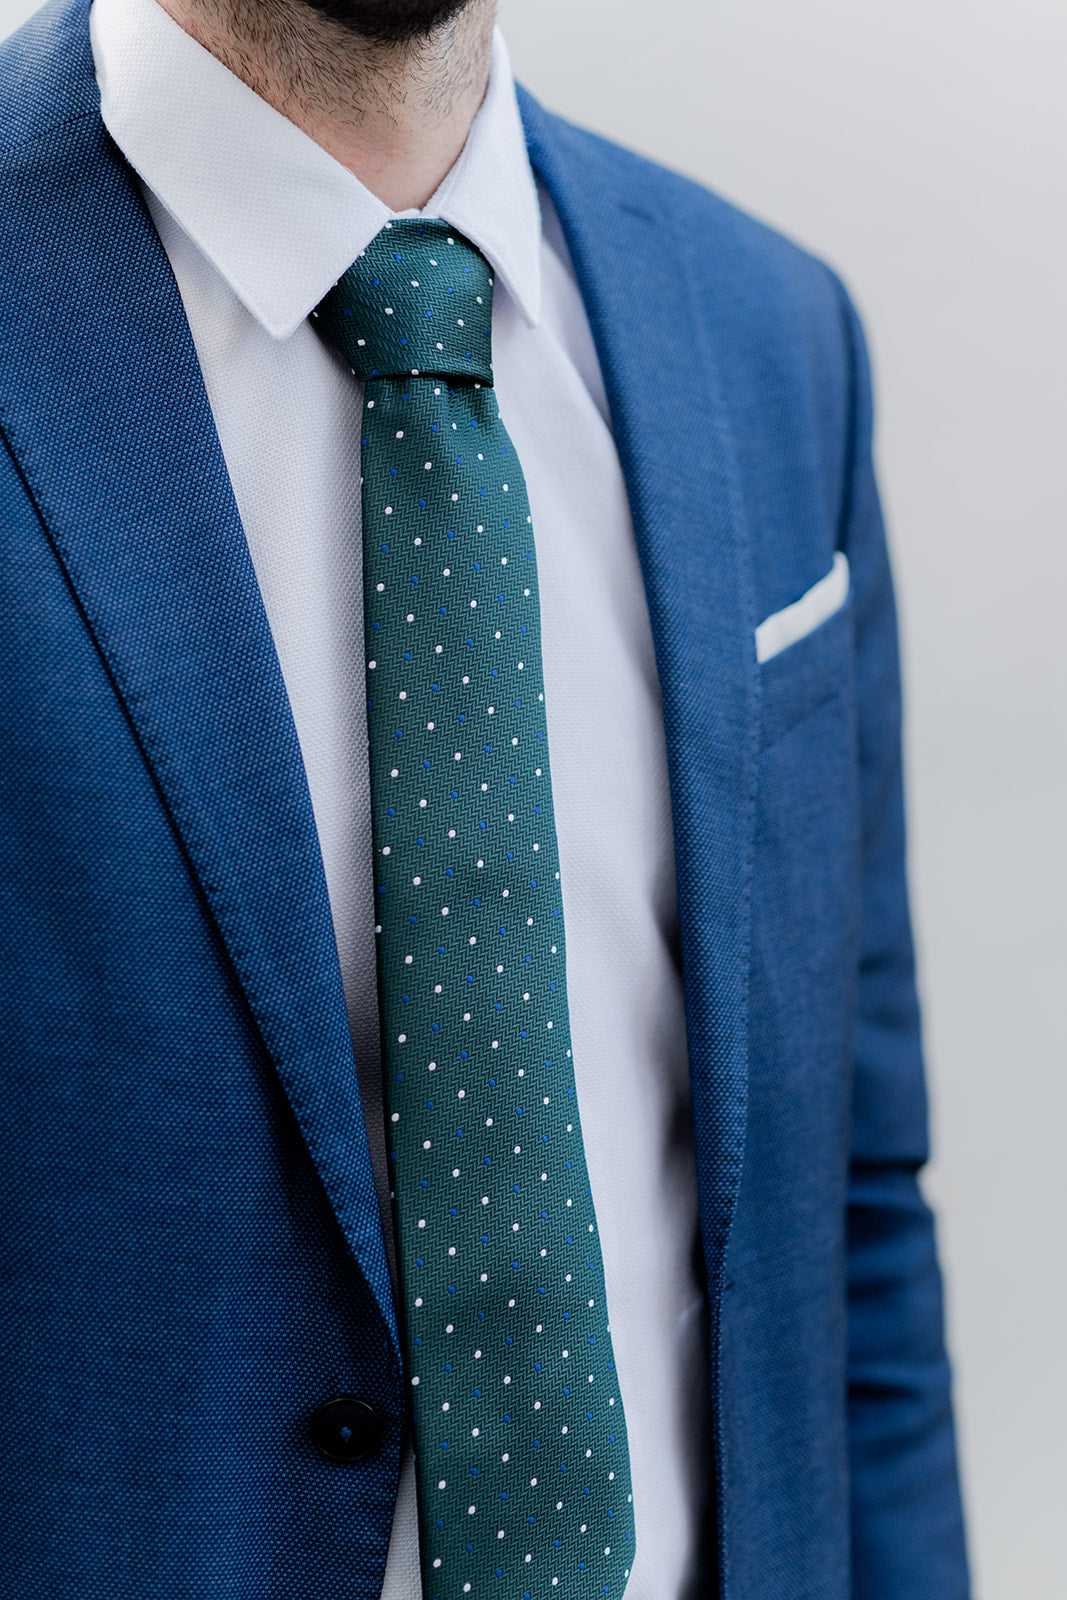 Corbata Verde Puntos-Corbatas-Loovshoes